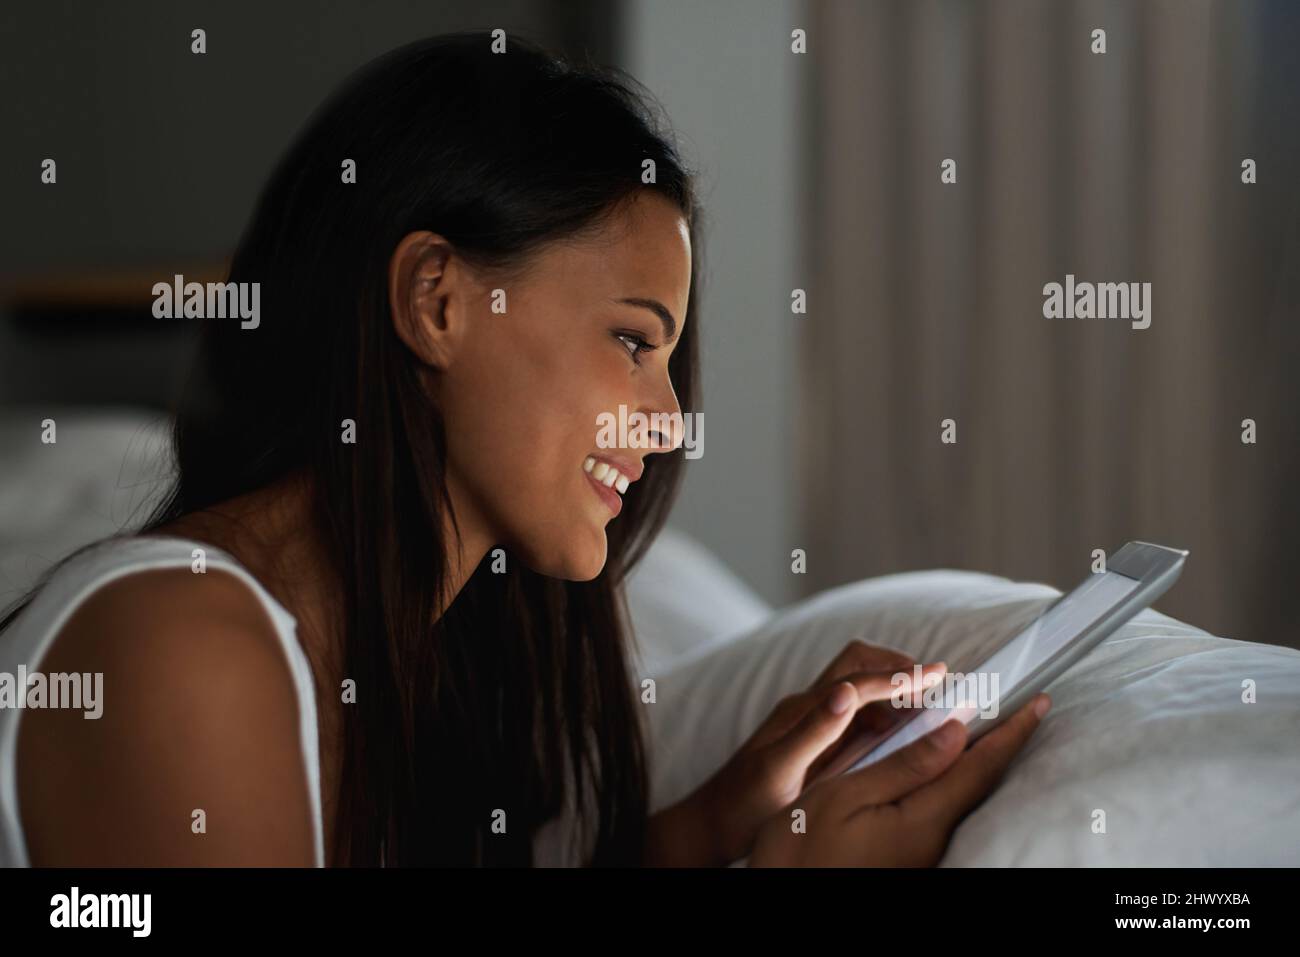 Garder le contact n'a jamais été aussi simple. Photo d'une belle jeune femme se reposant au lit avec sa tablette. Banque D'Images